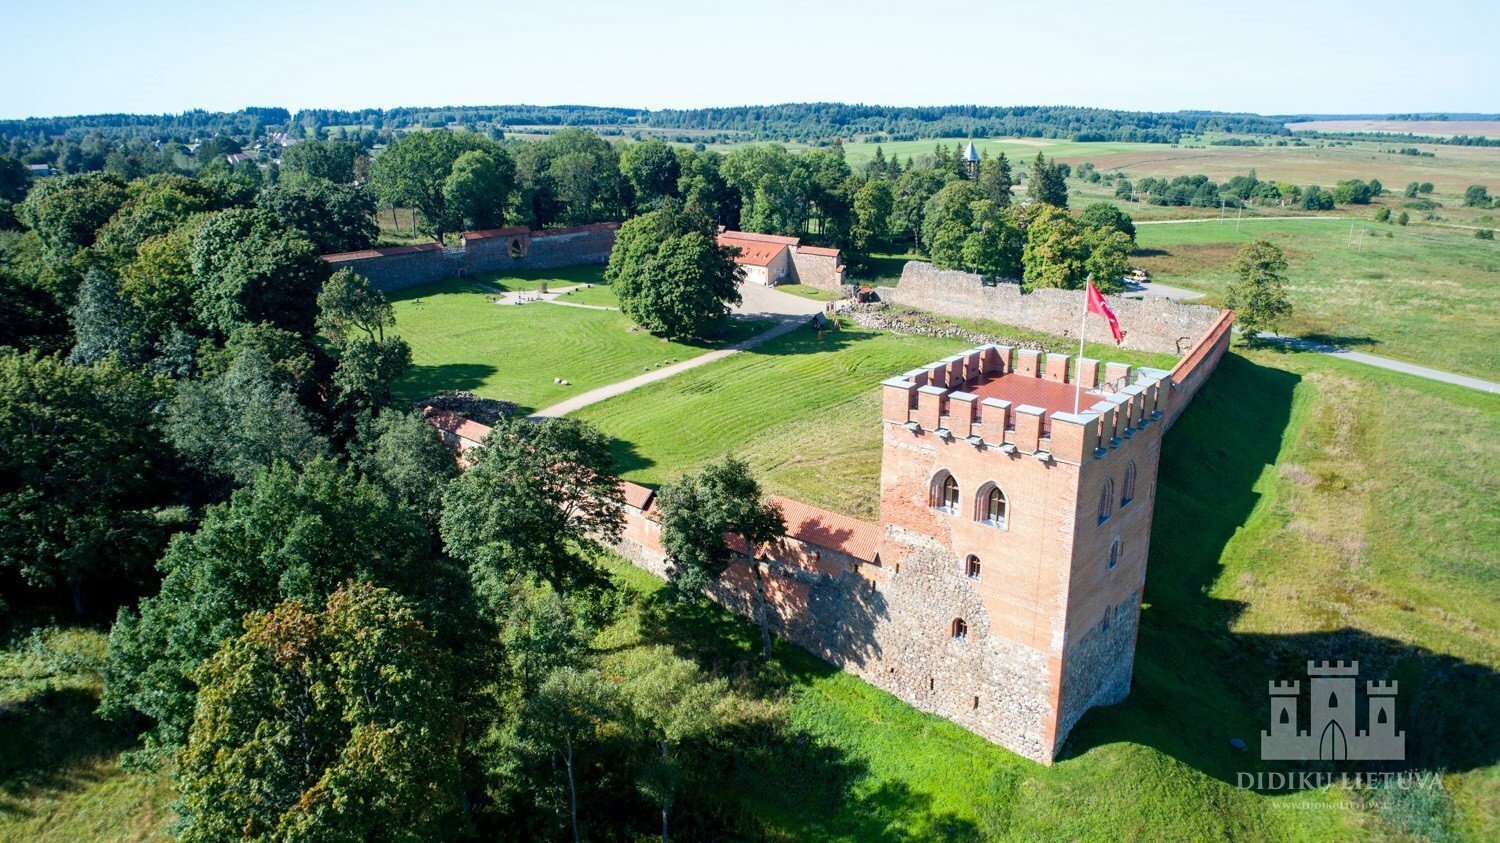 Medininkų pilis – Lietuvos Didžiosios Kunigaikštystės liudininkė